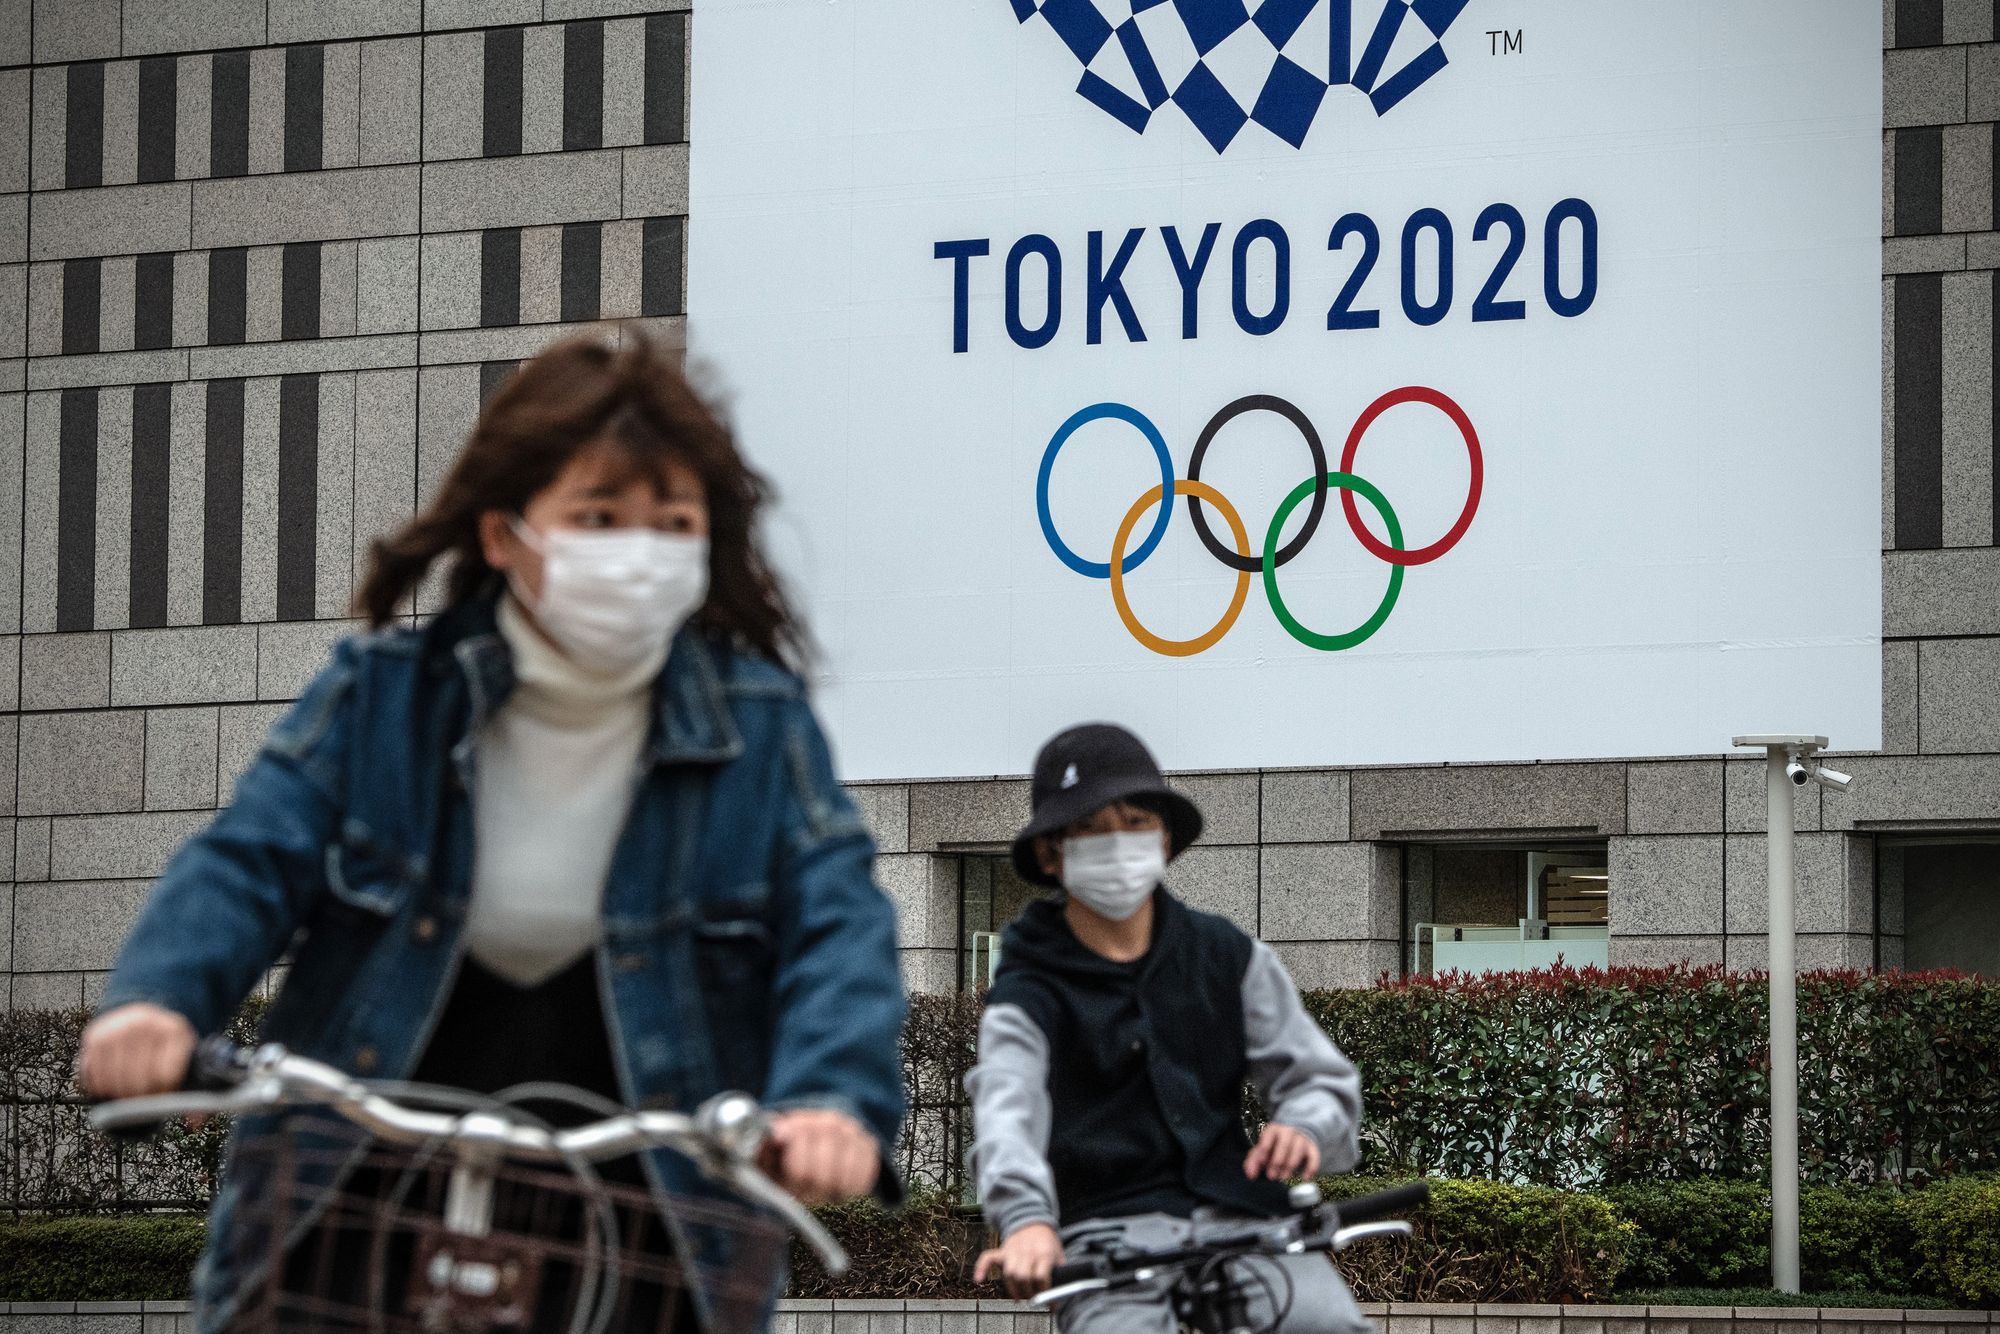 A felirat már nem aktuális, Tokióban nem idén, hanem 2021-ben lesz olimpia. /  Fotó: GettyImages